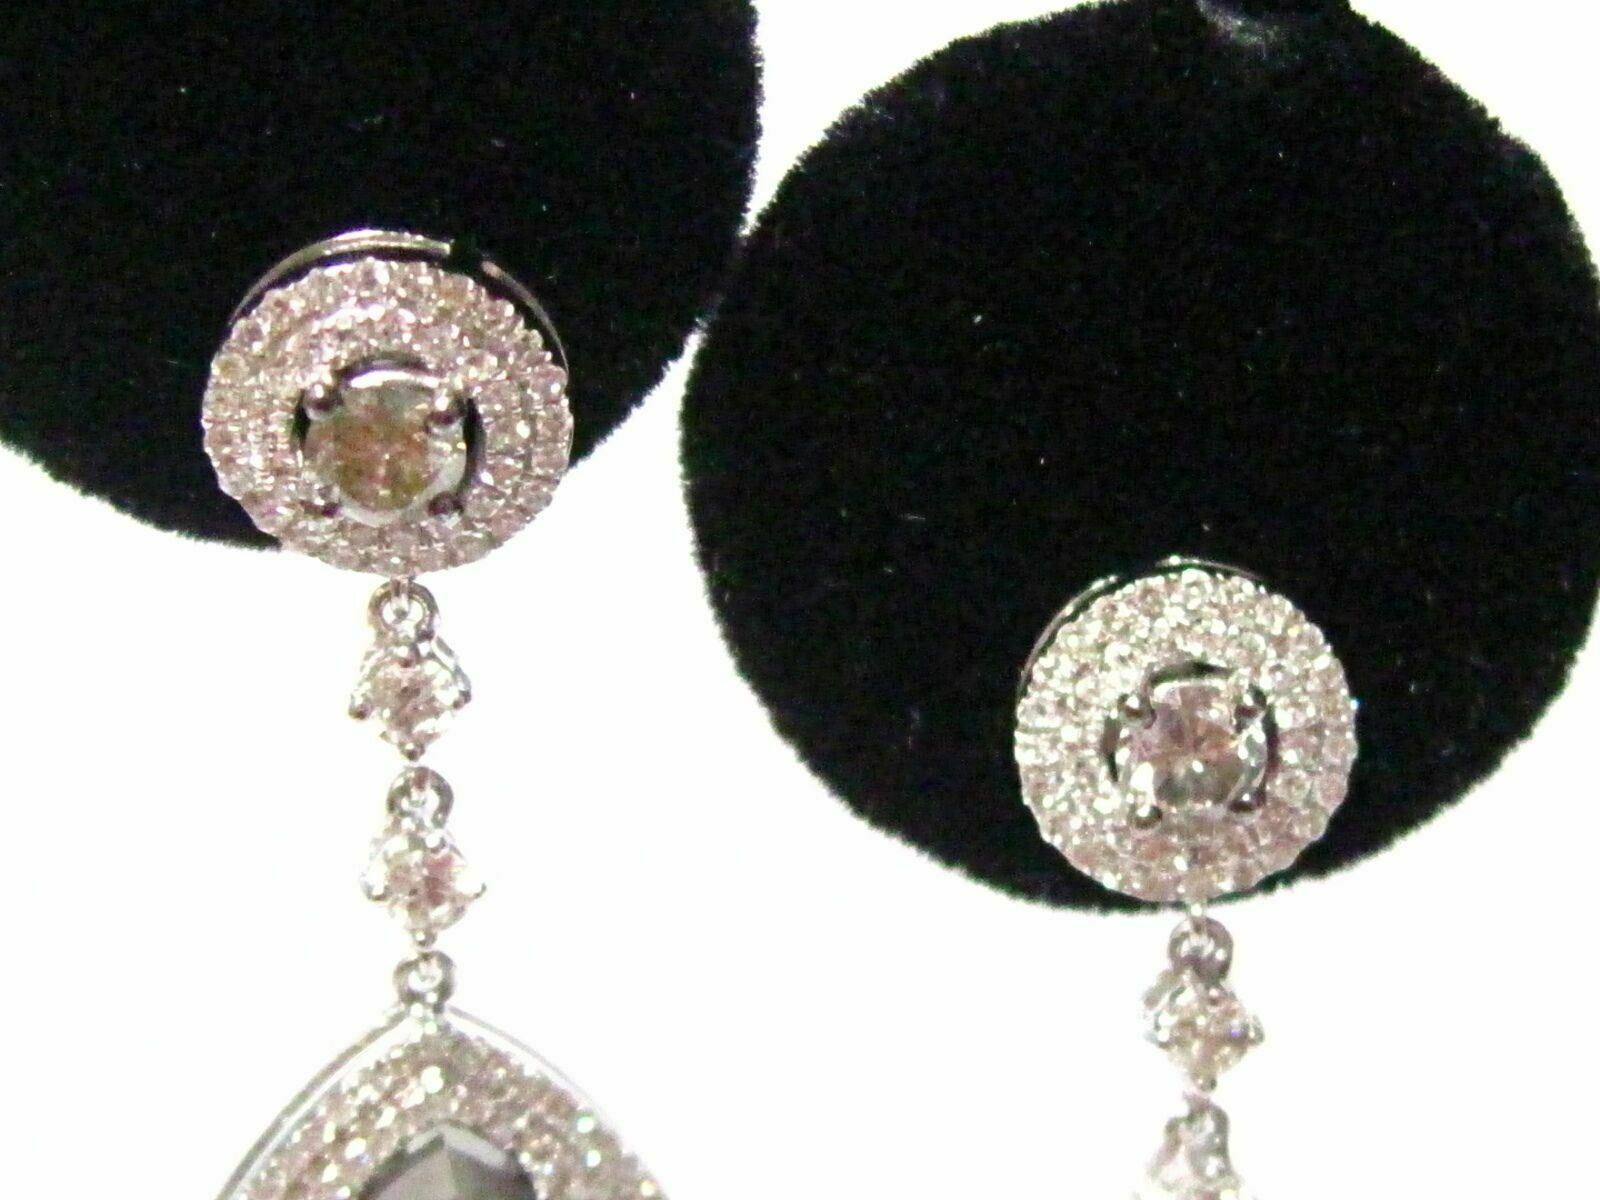 17.18 TCW Natural Pear Shape Fancy Grey Diamond Dangle/Chandelier Earrings 14k